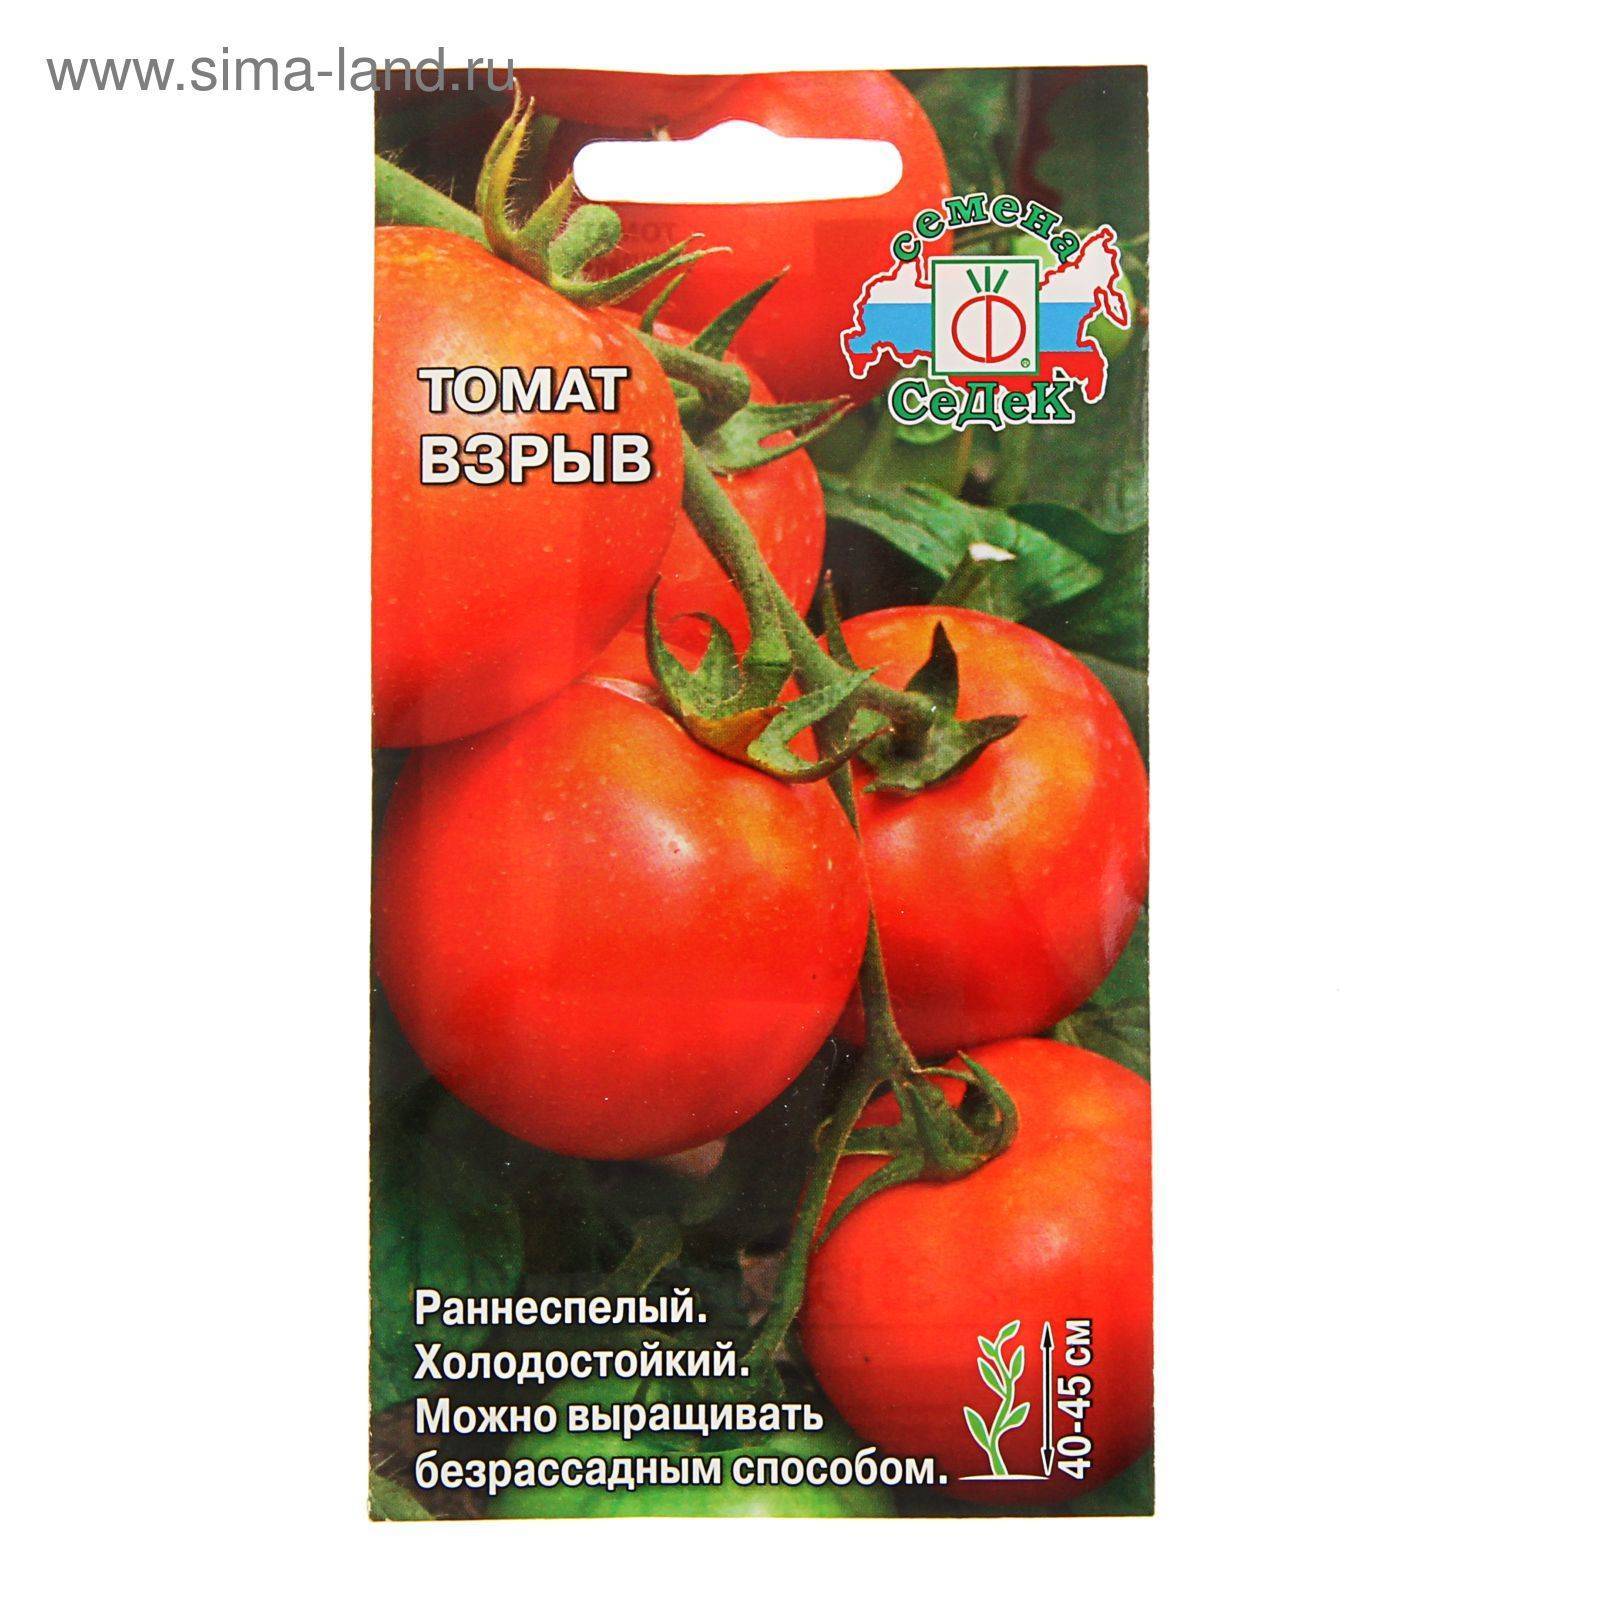 Описание лучших сортов безрассадных томатов и технология выращивания